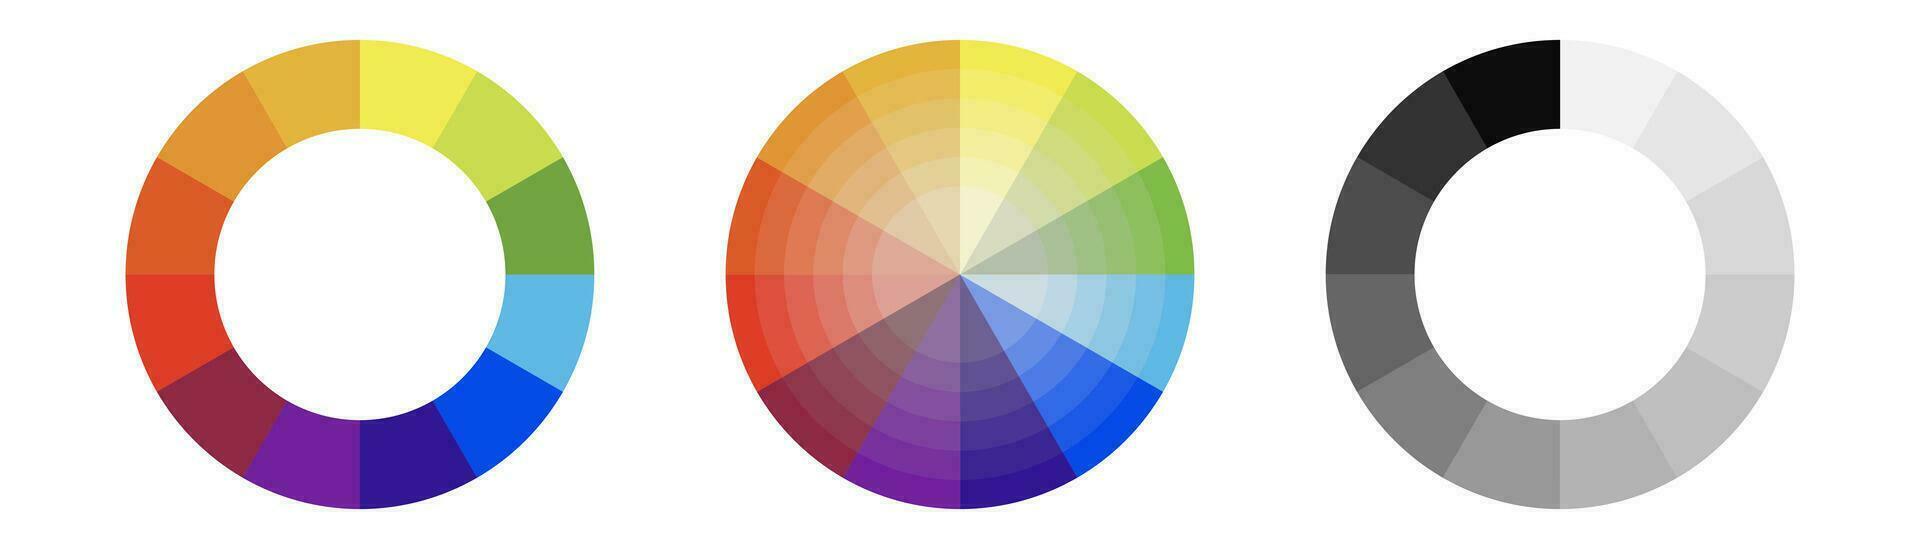 kleur wiel illustratie. kleur palet in cirkel. kleur wiel gradatie. multi gekleurd cirkel. voorraad vector illustratie